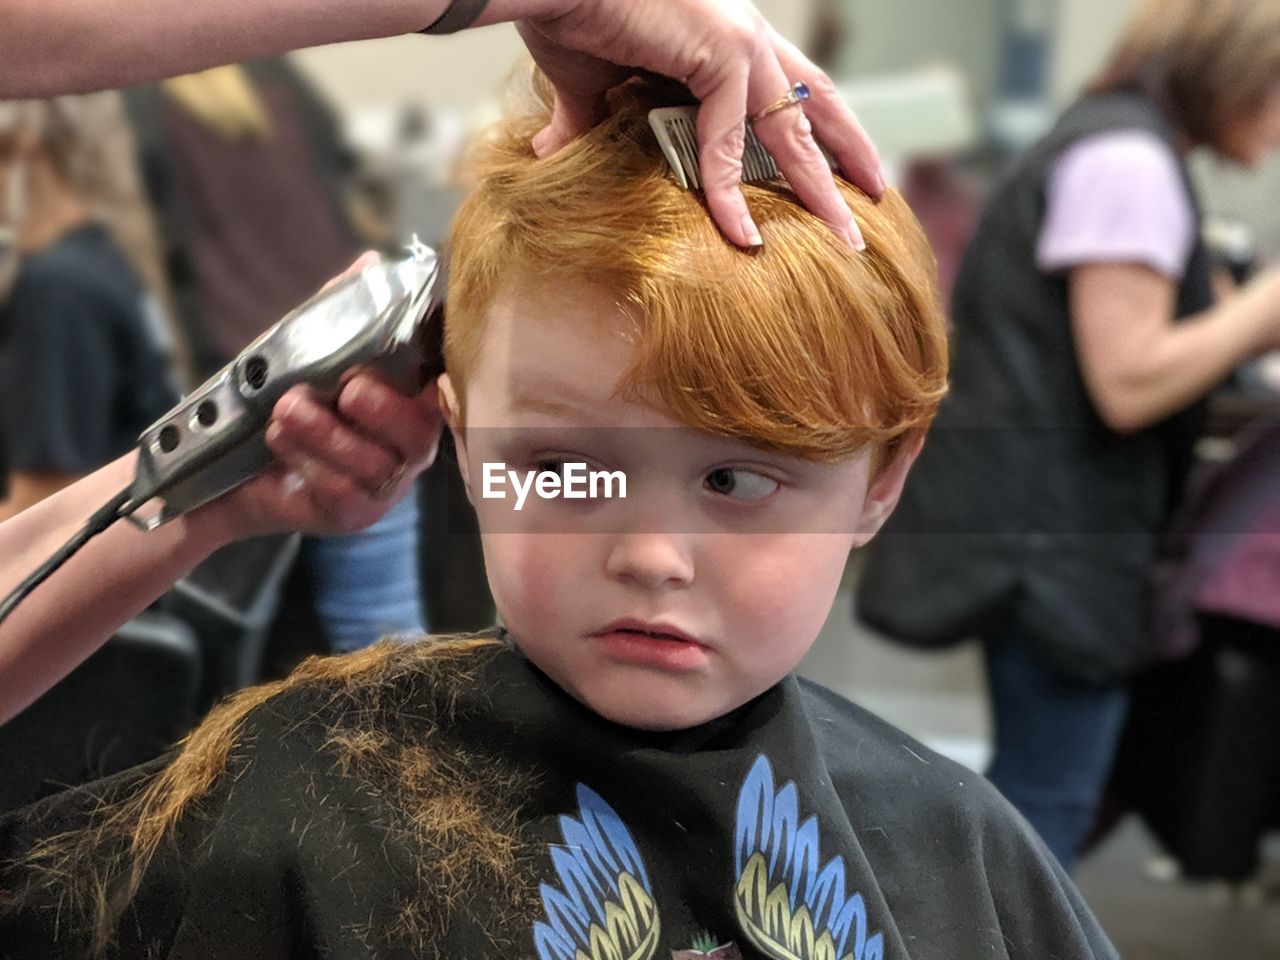 Suspicious boy receiving a haircut